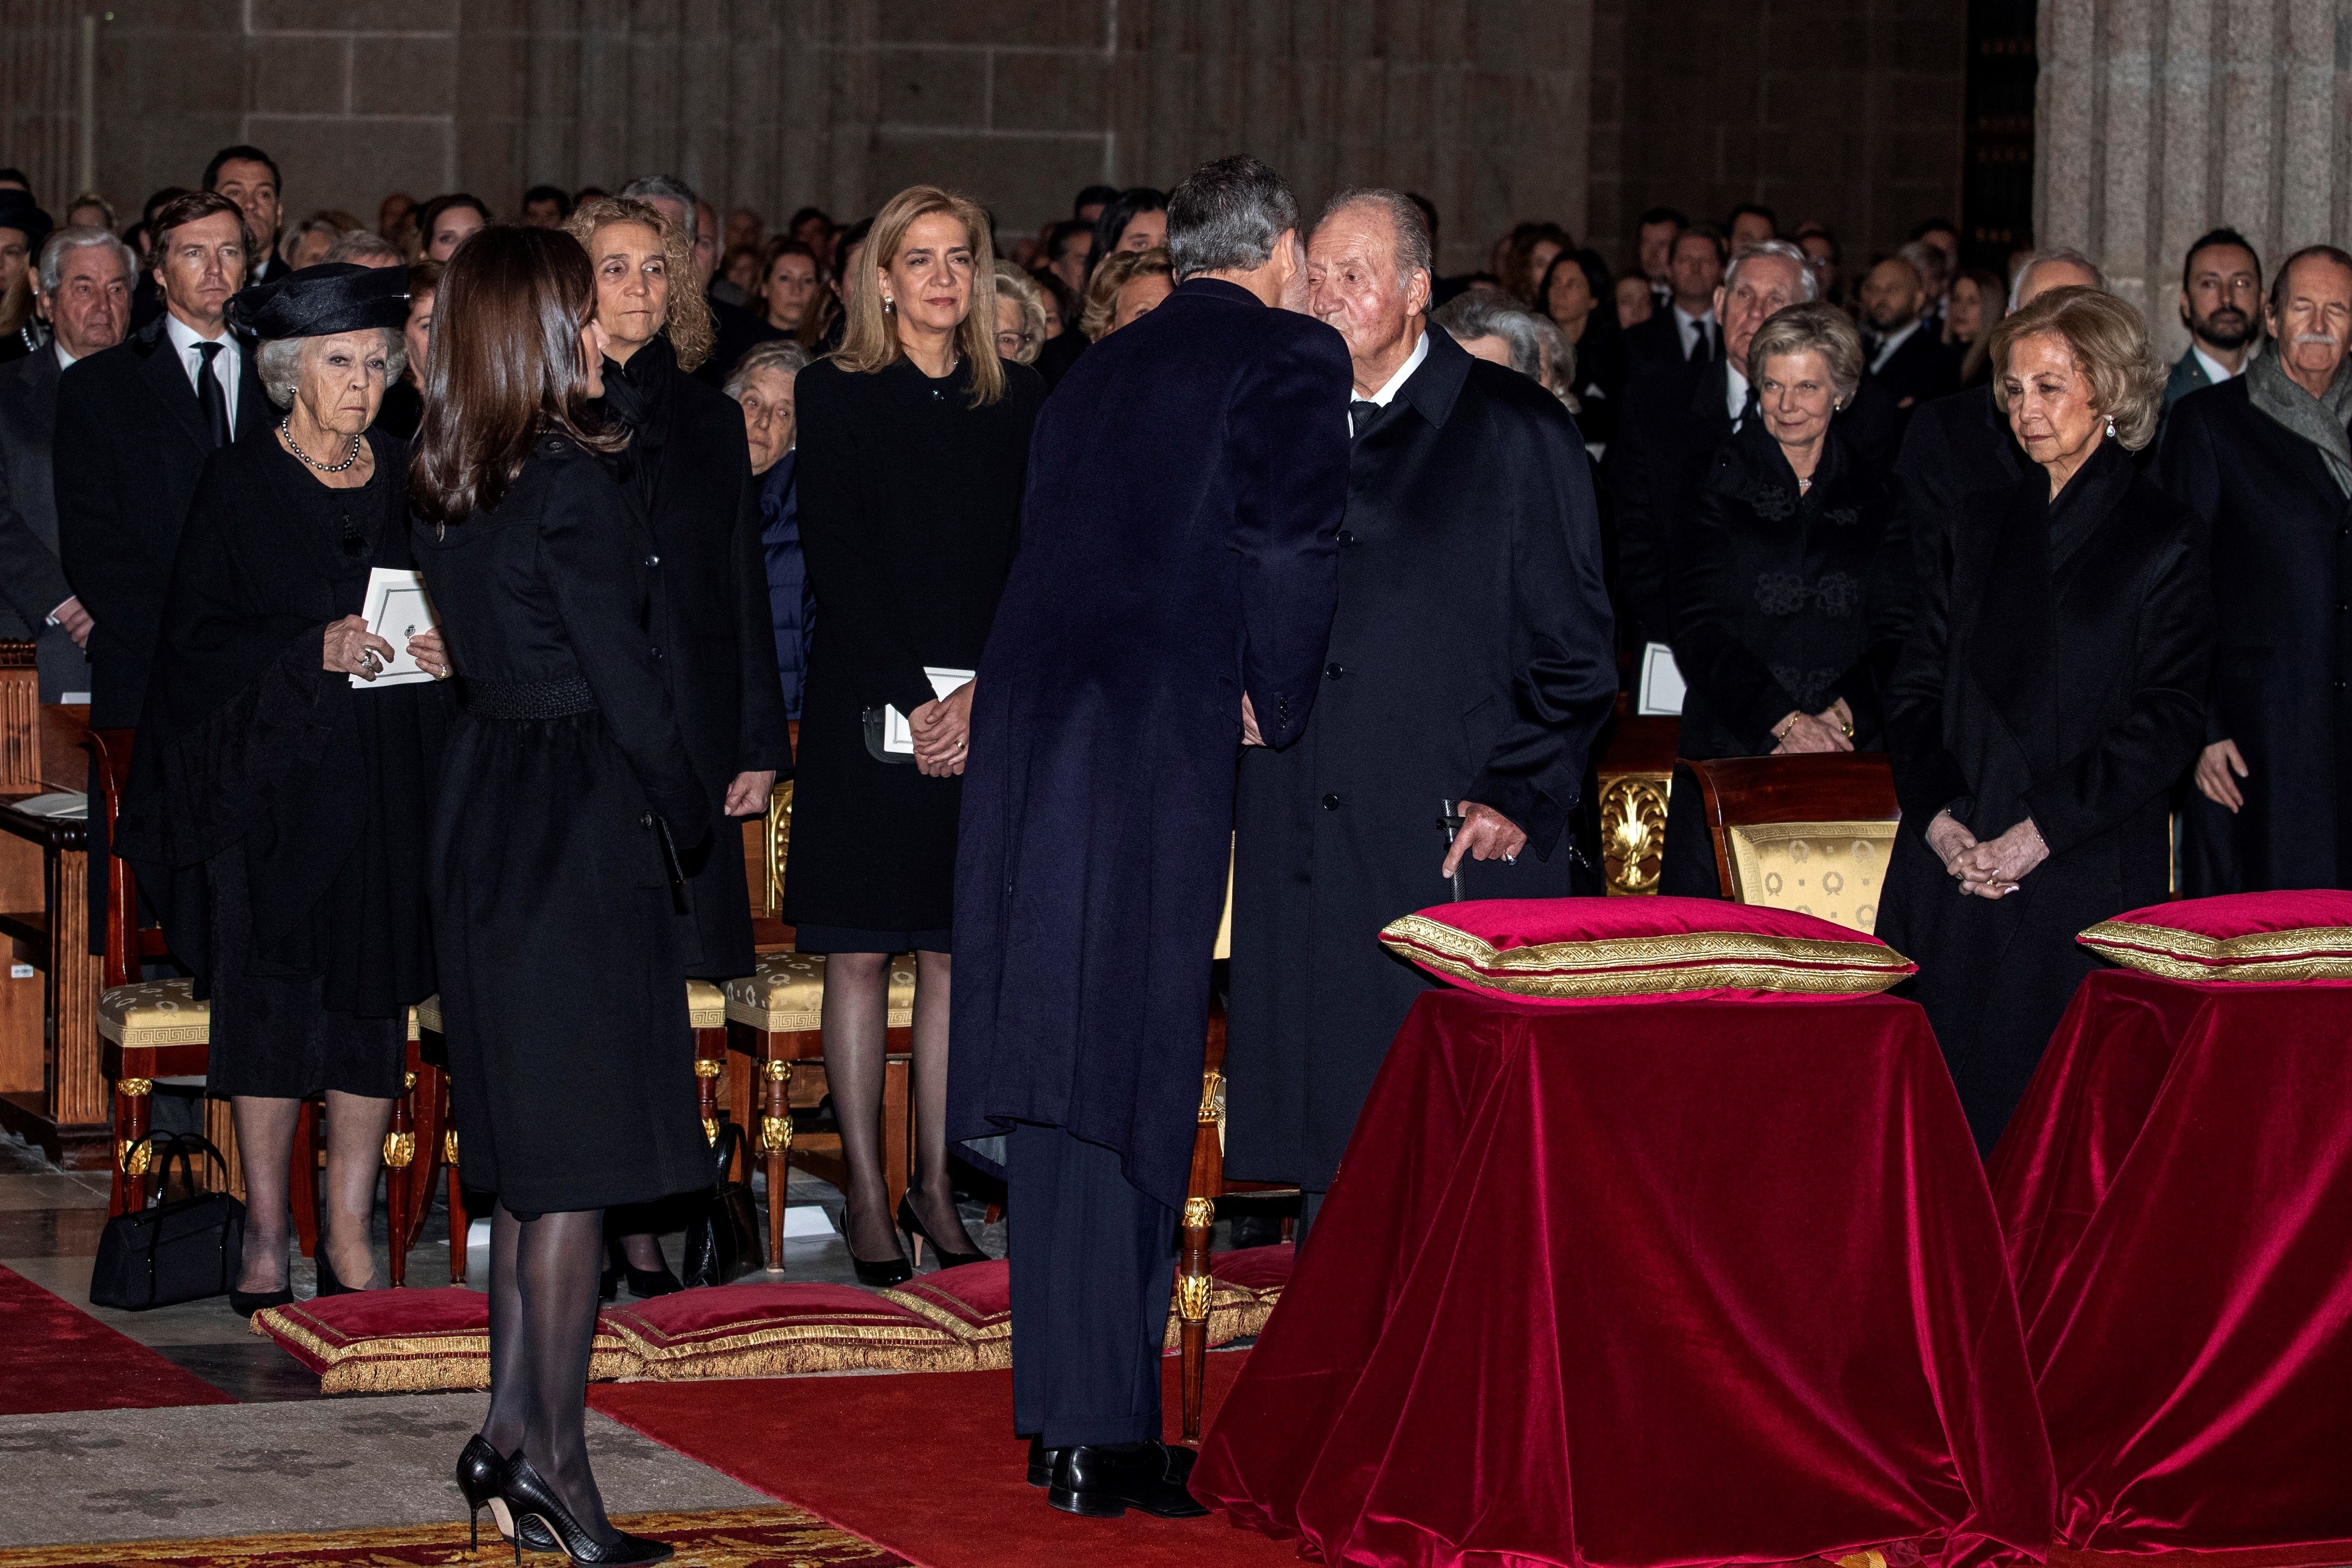 El funeral d'Elisabet II no mostrarà uns Borbons units: Felip VI i Joan Carles I s'asseuran lluny